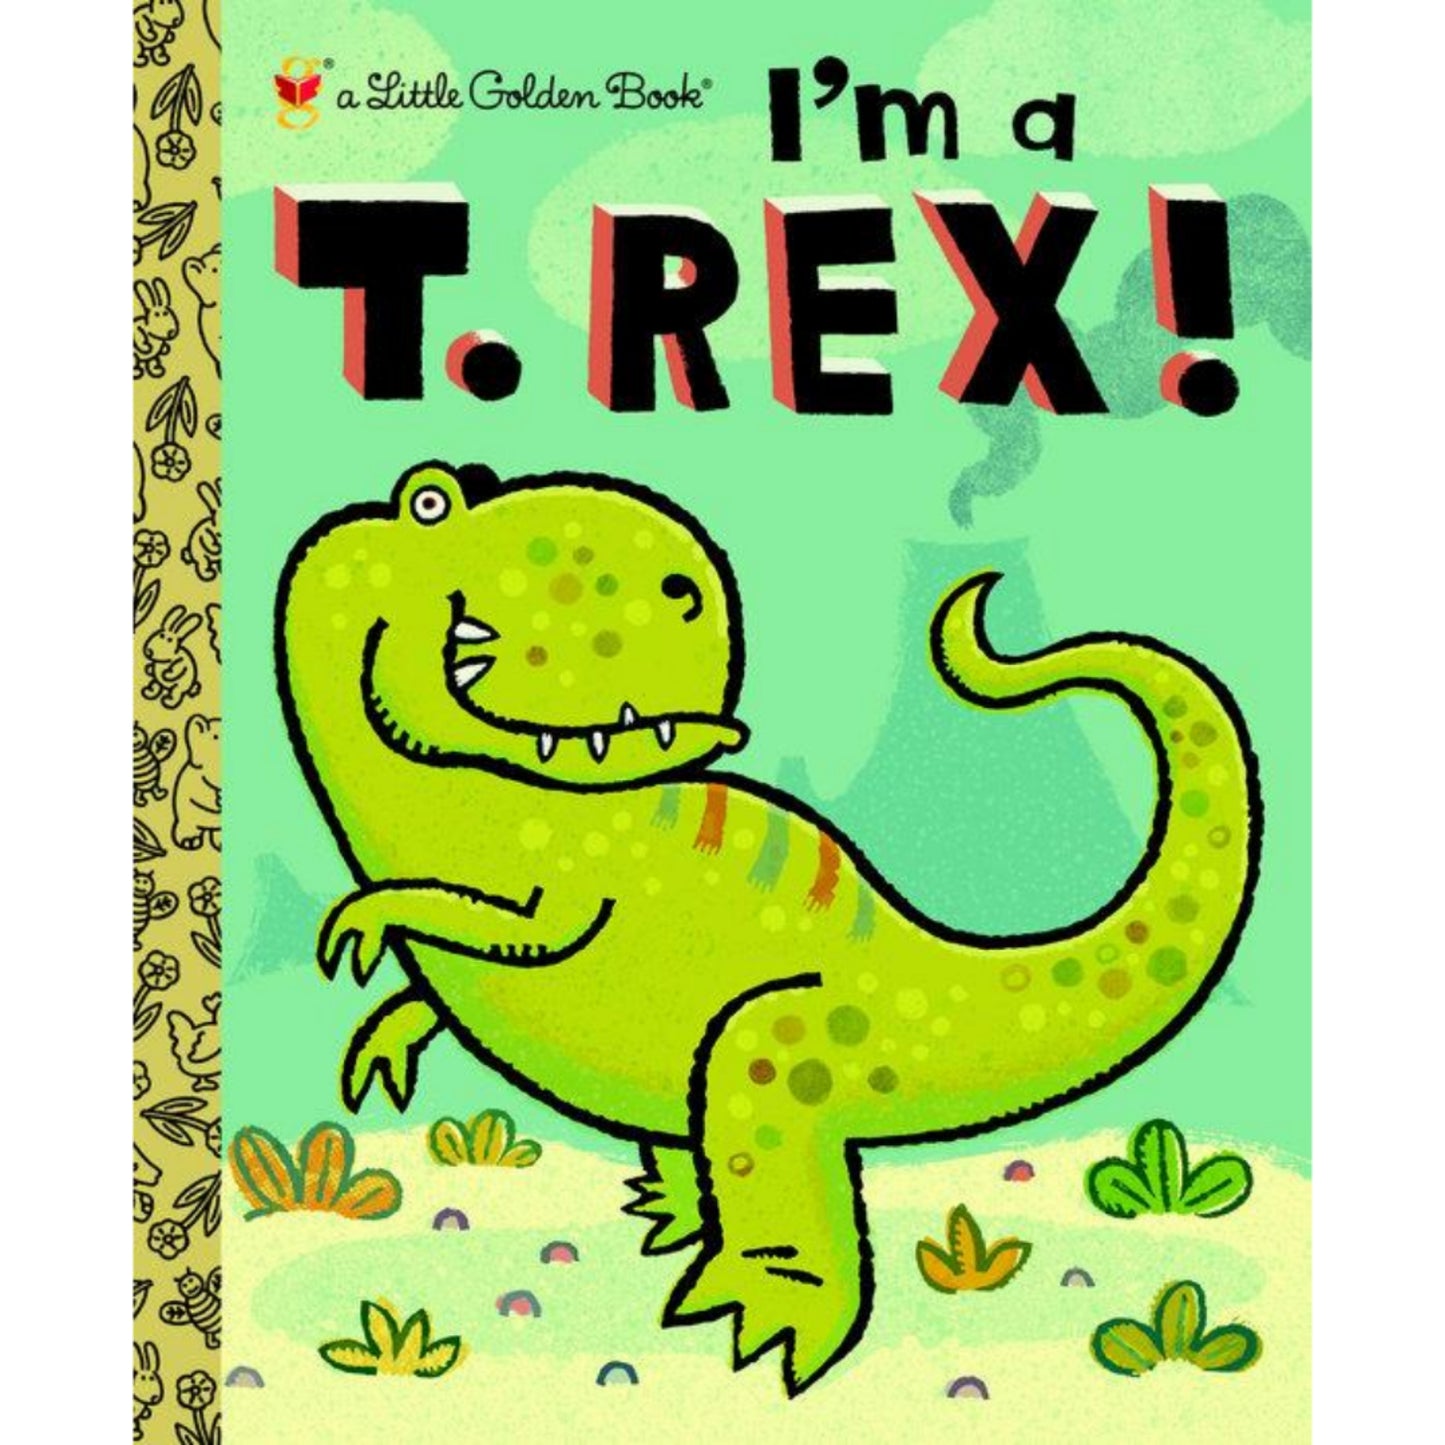 I’m a T. Rex!